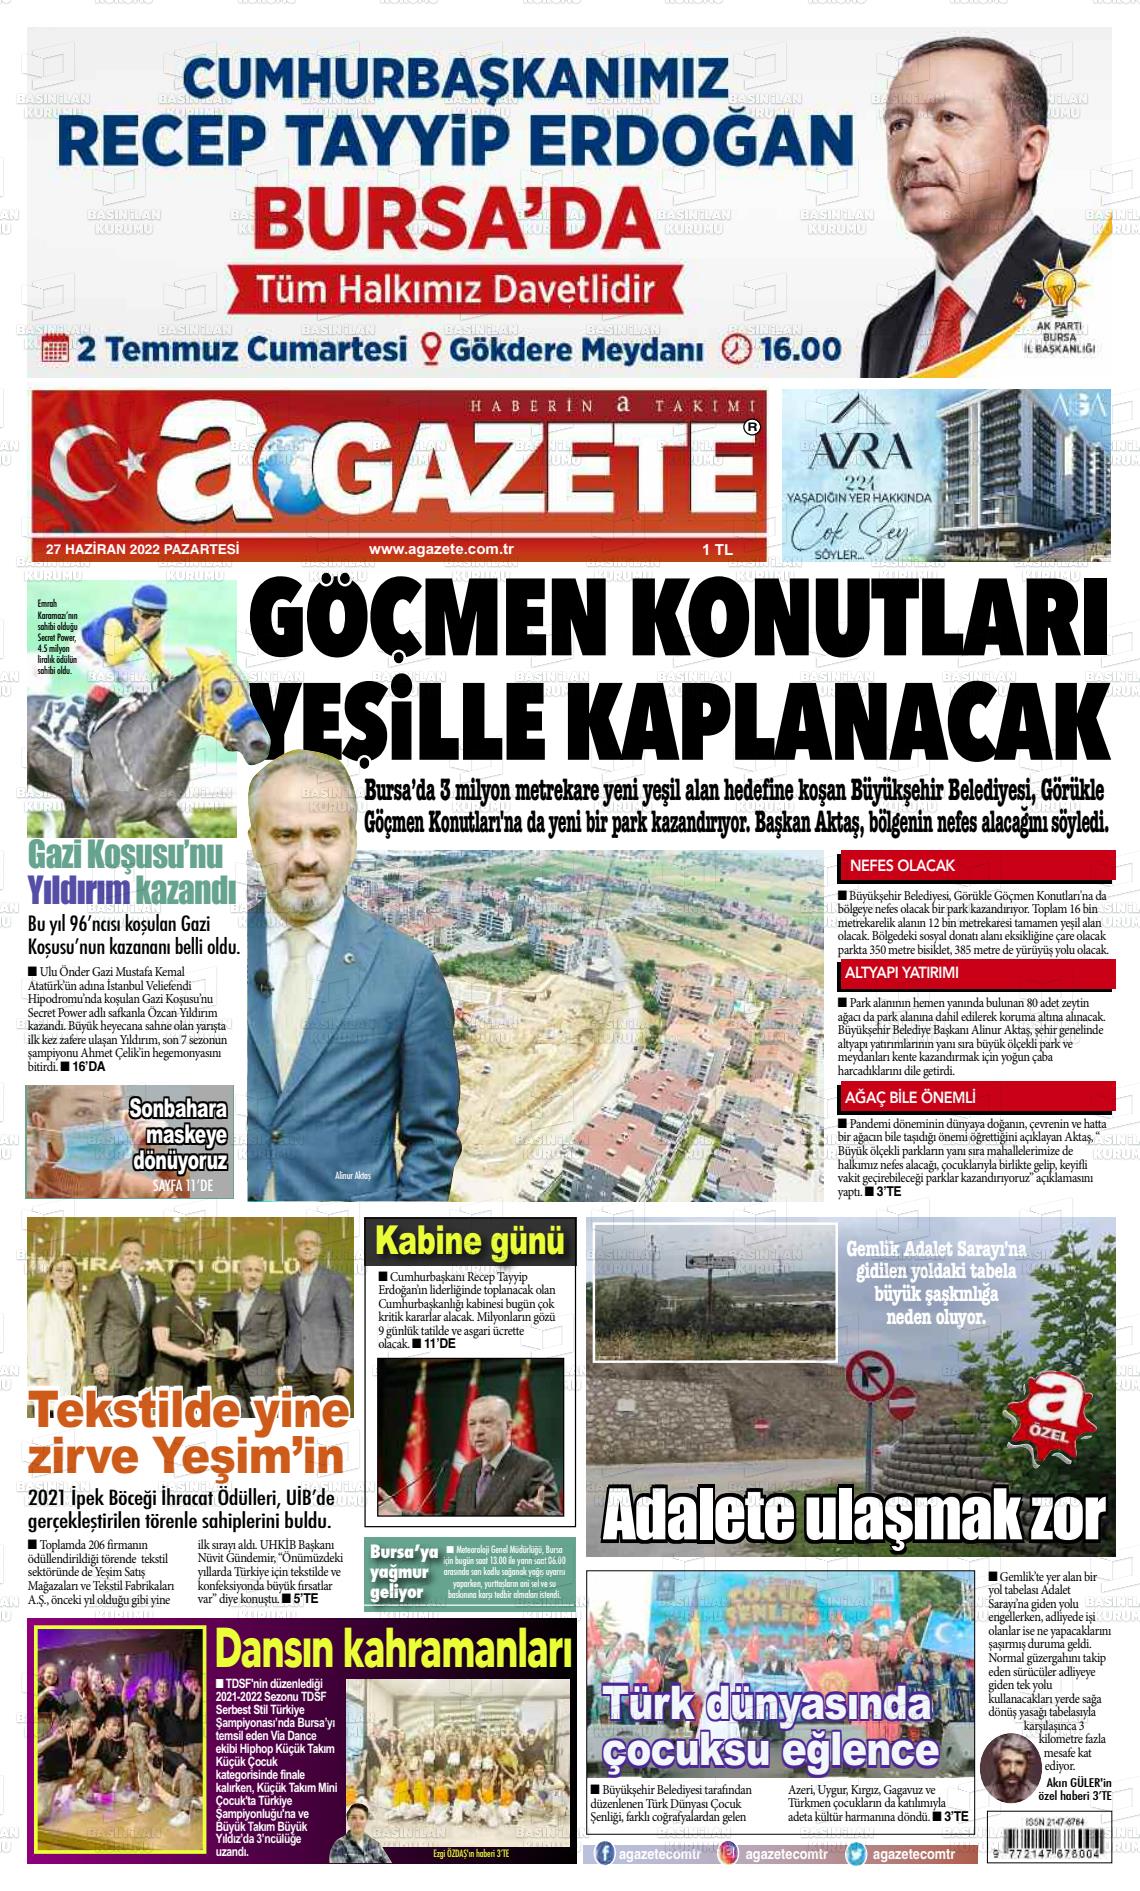 27 Haziran 2022 a gazete Gazete Manşeti